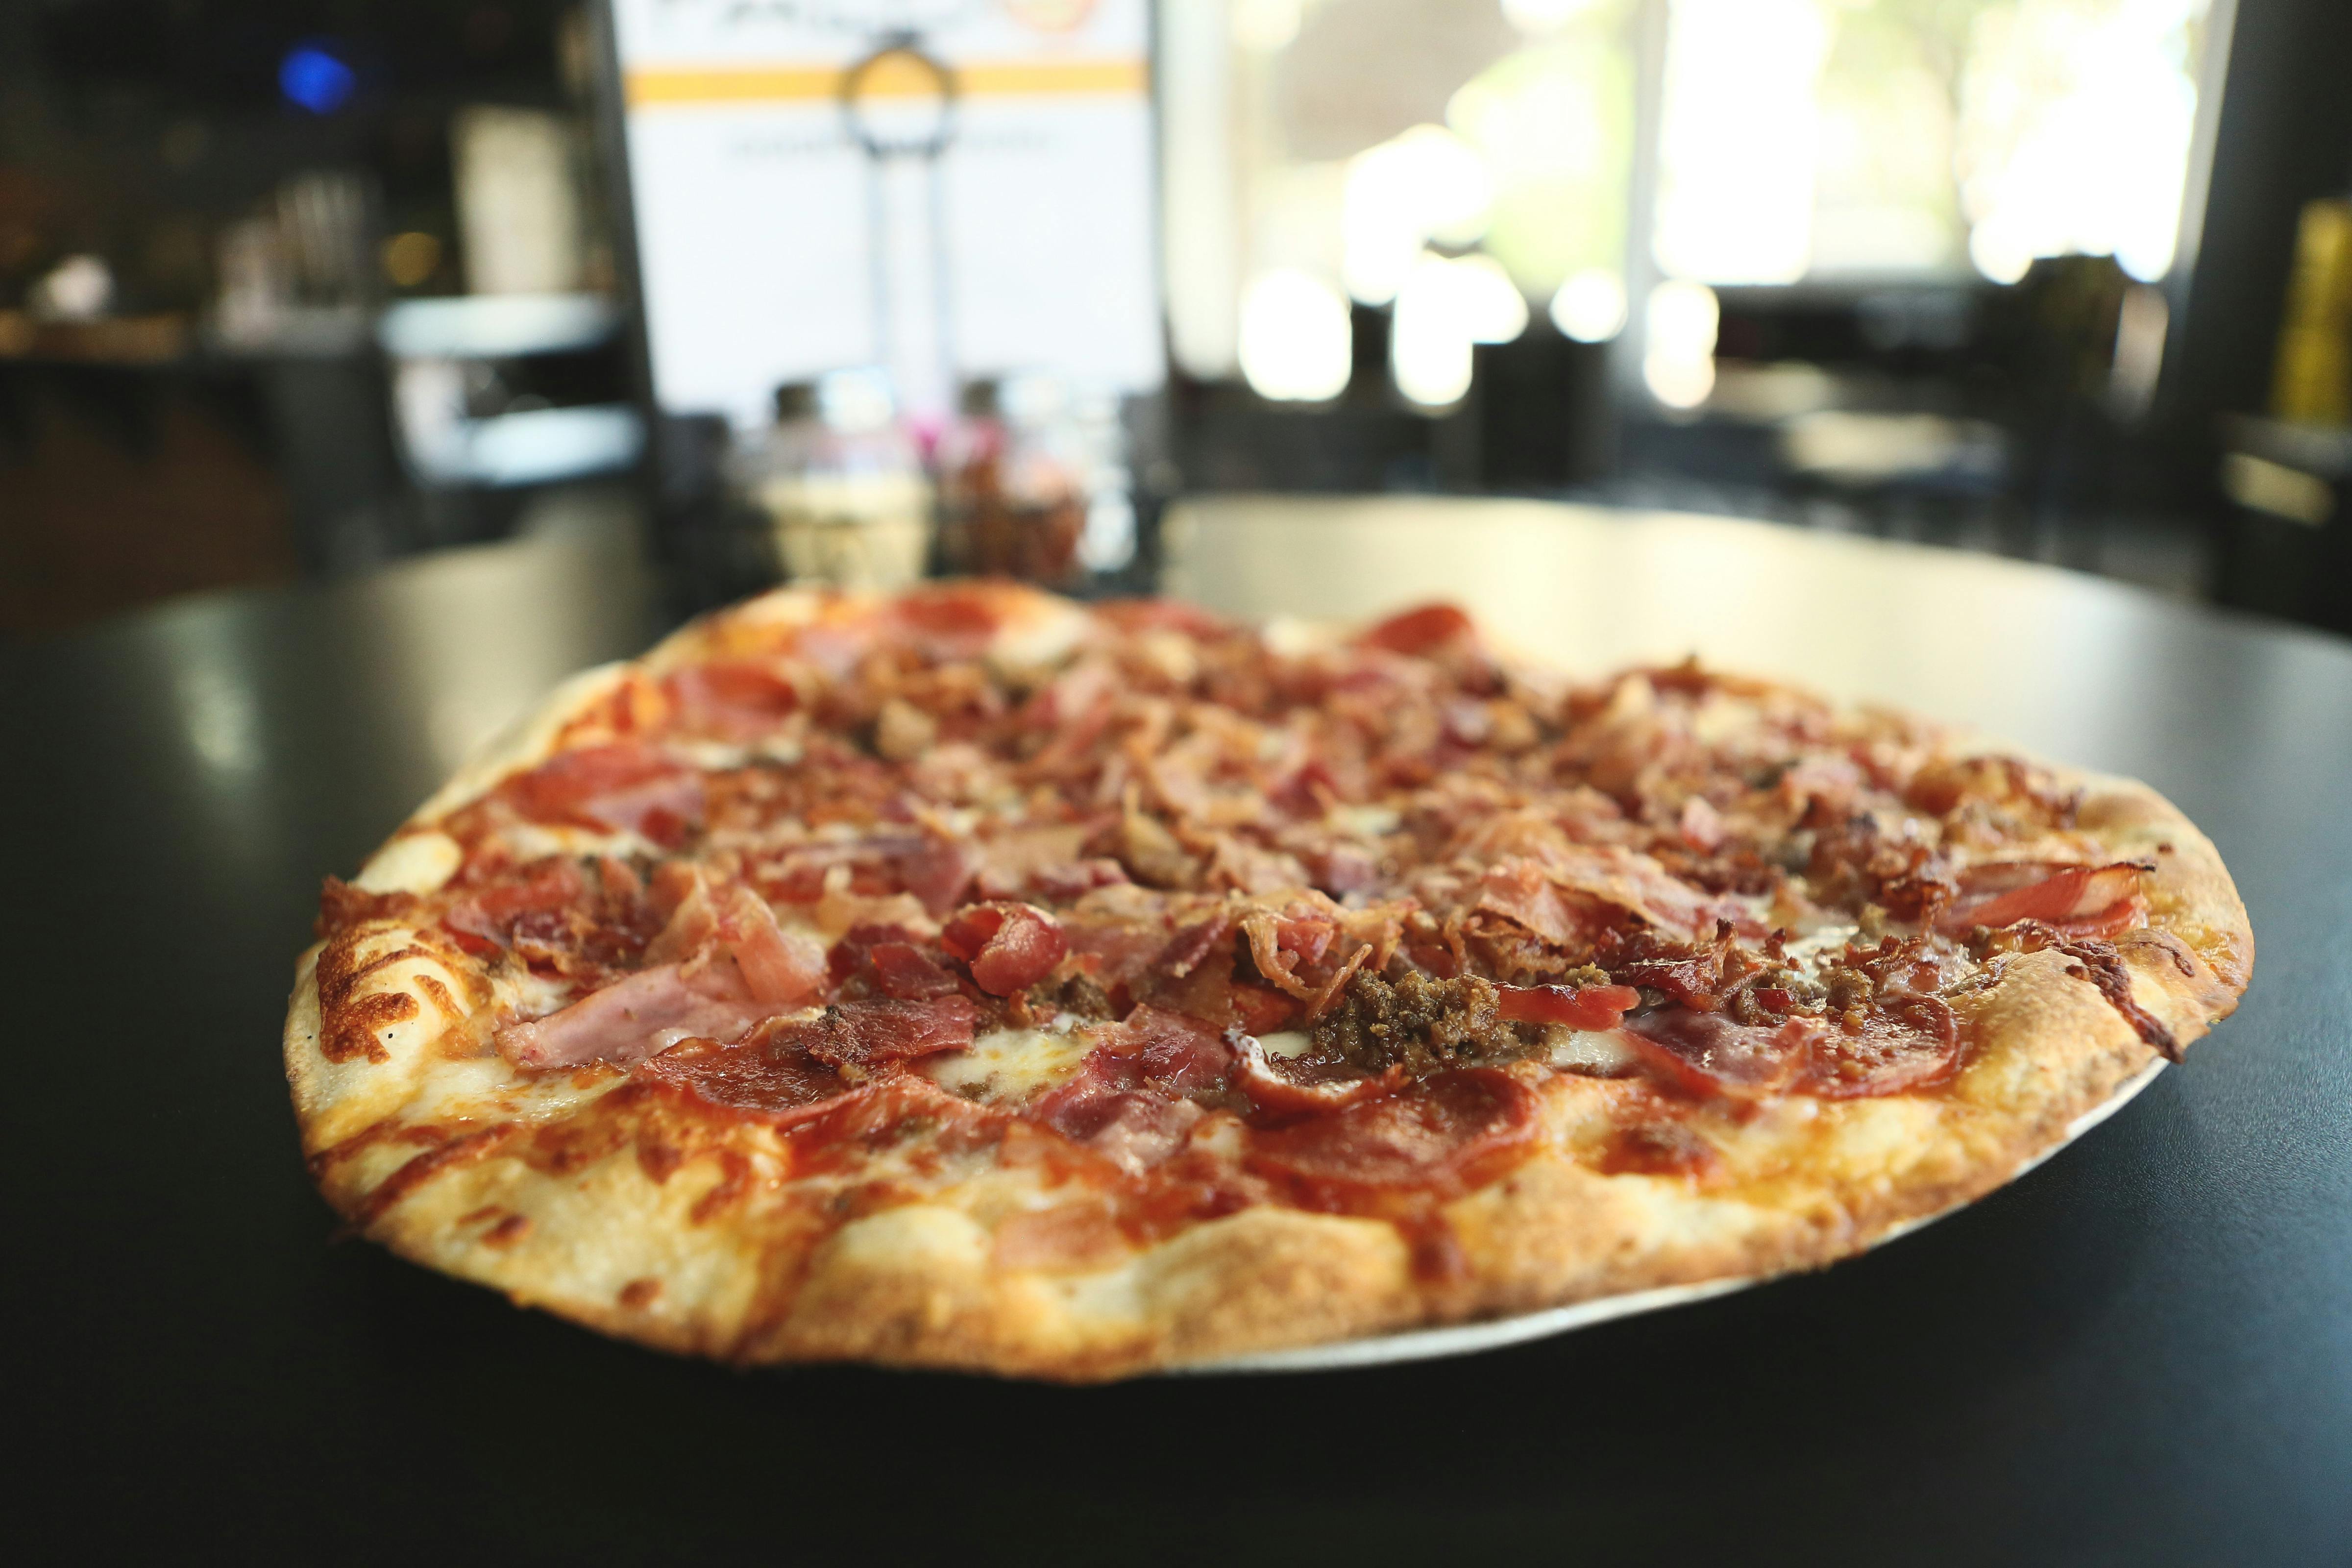 The Slaughterhouse Five Pizza from Falbo Bros. Pizzeria - Monona in Monona, WI